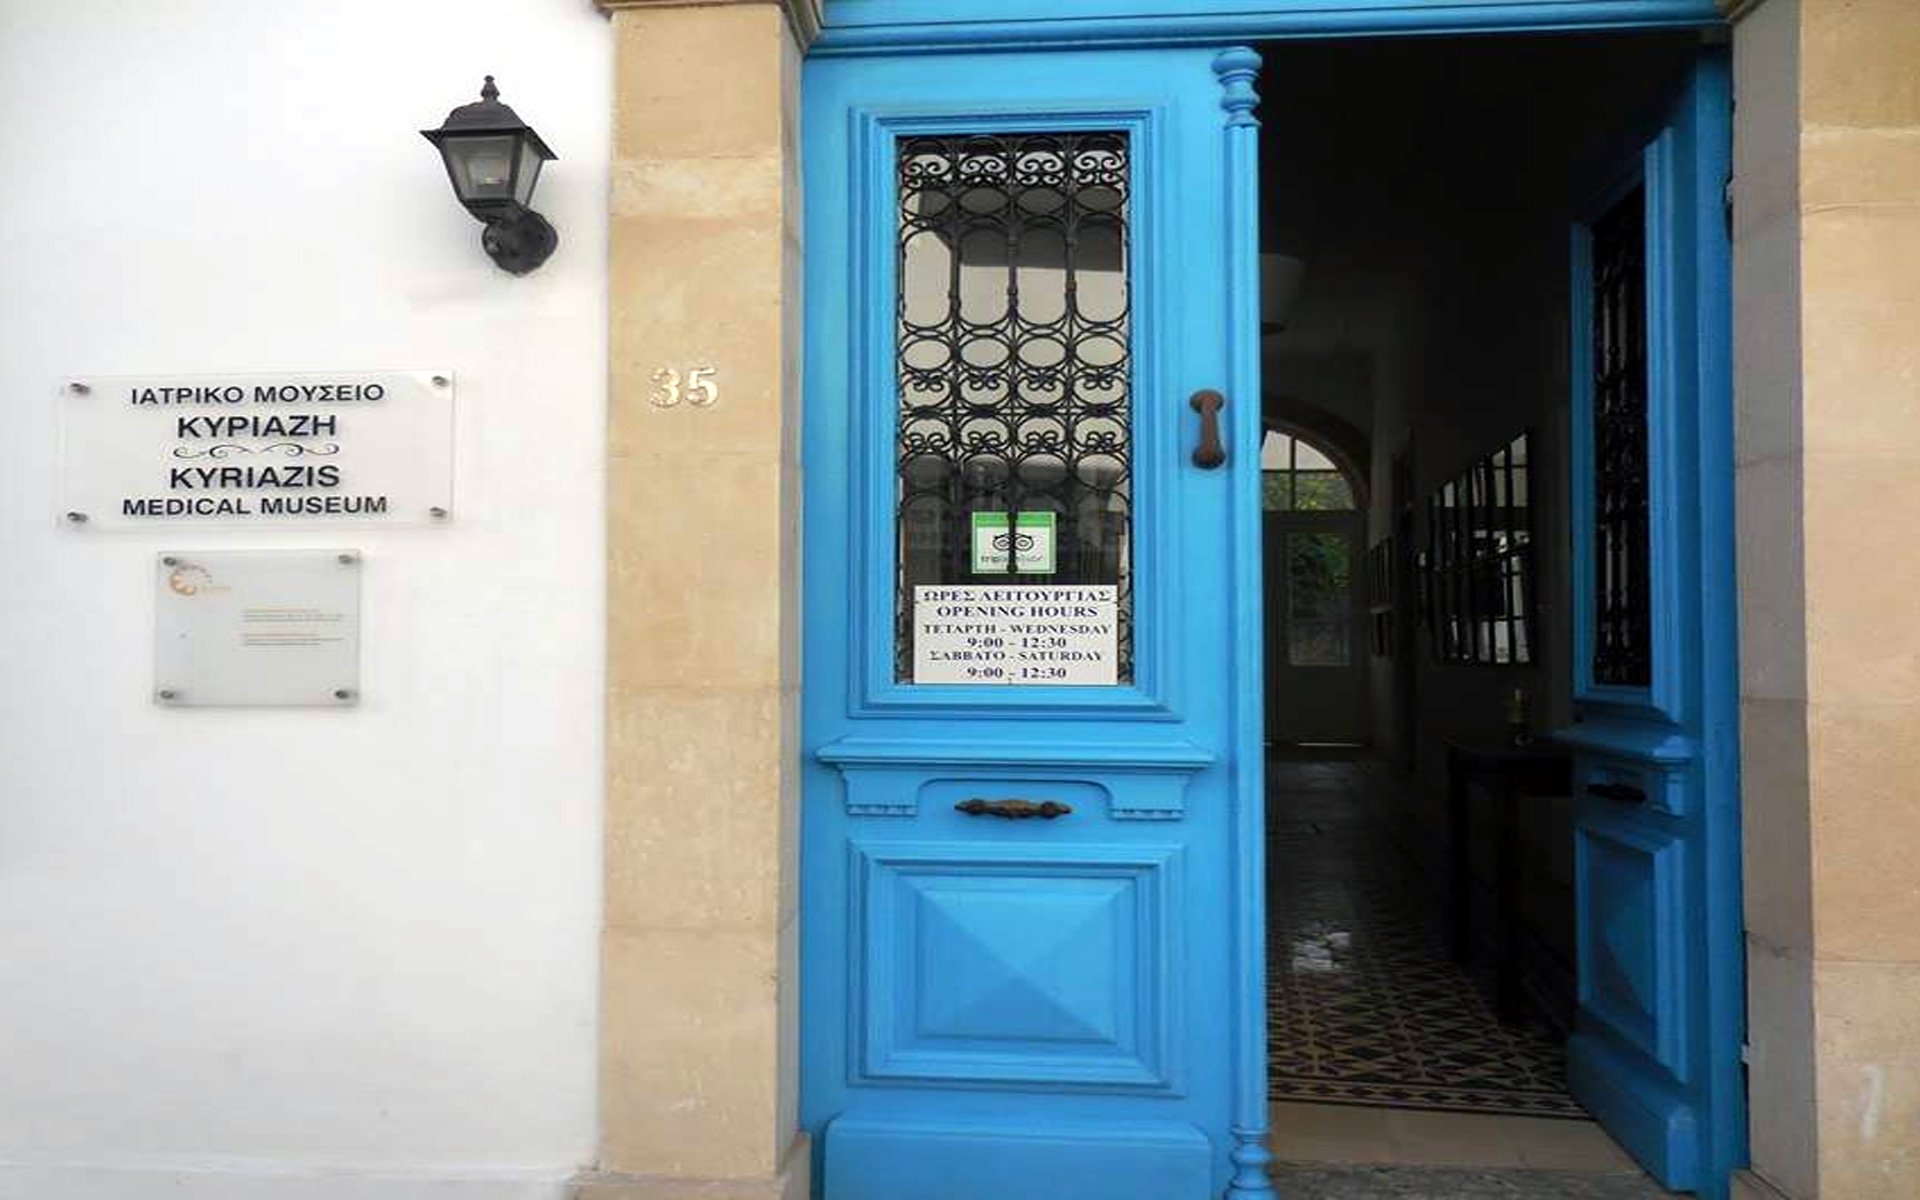 Kyriazis Medical Museum in Cyprus